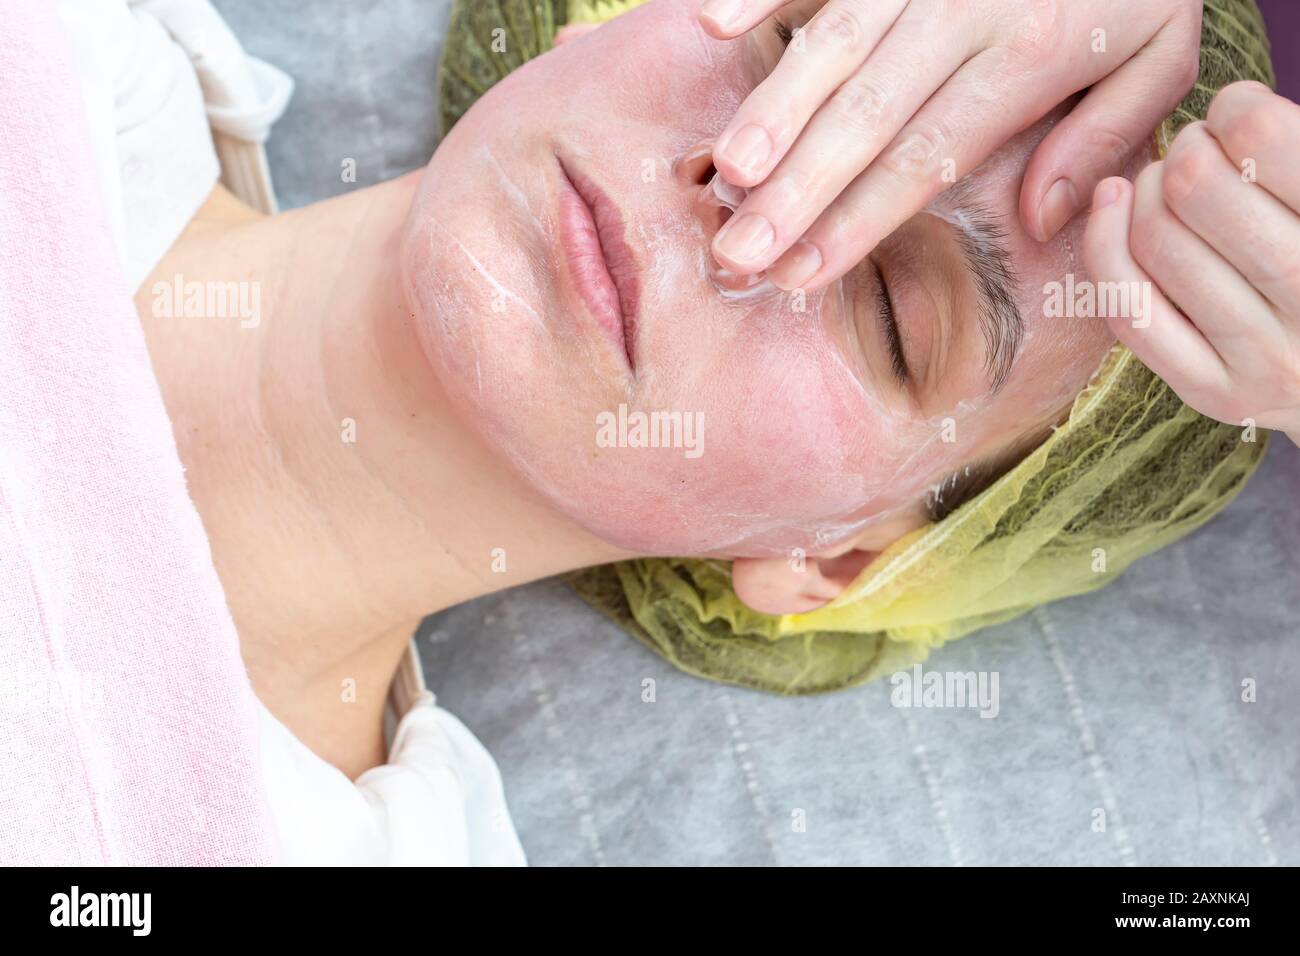 Limpieza facial profunda de la cara de una mujer con las manos y una  cuchara de un esteticista en guantes. En el salón con una toalla blanca.  Cosmetólogo usando Fotografía de stock 